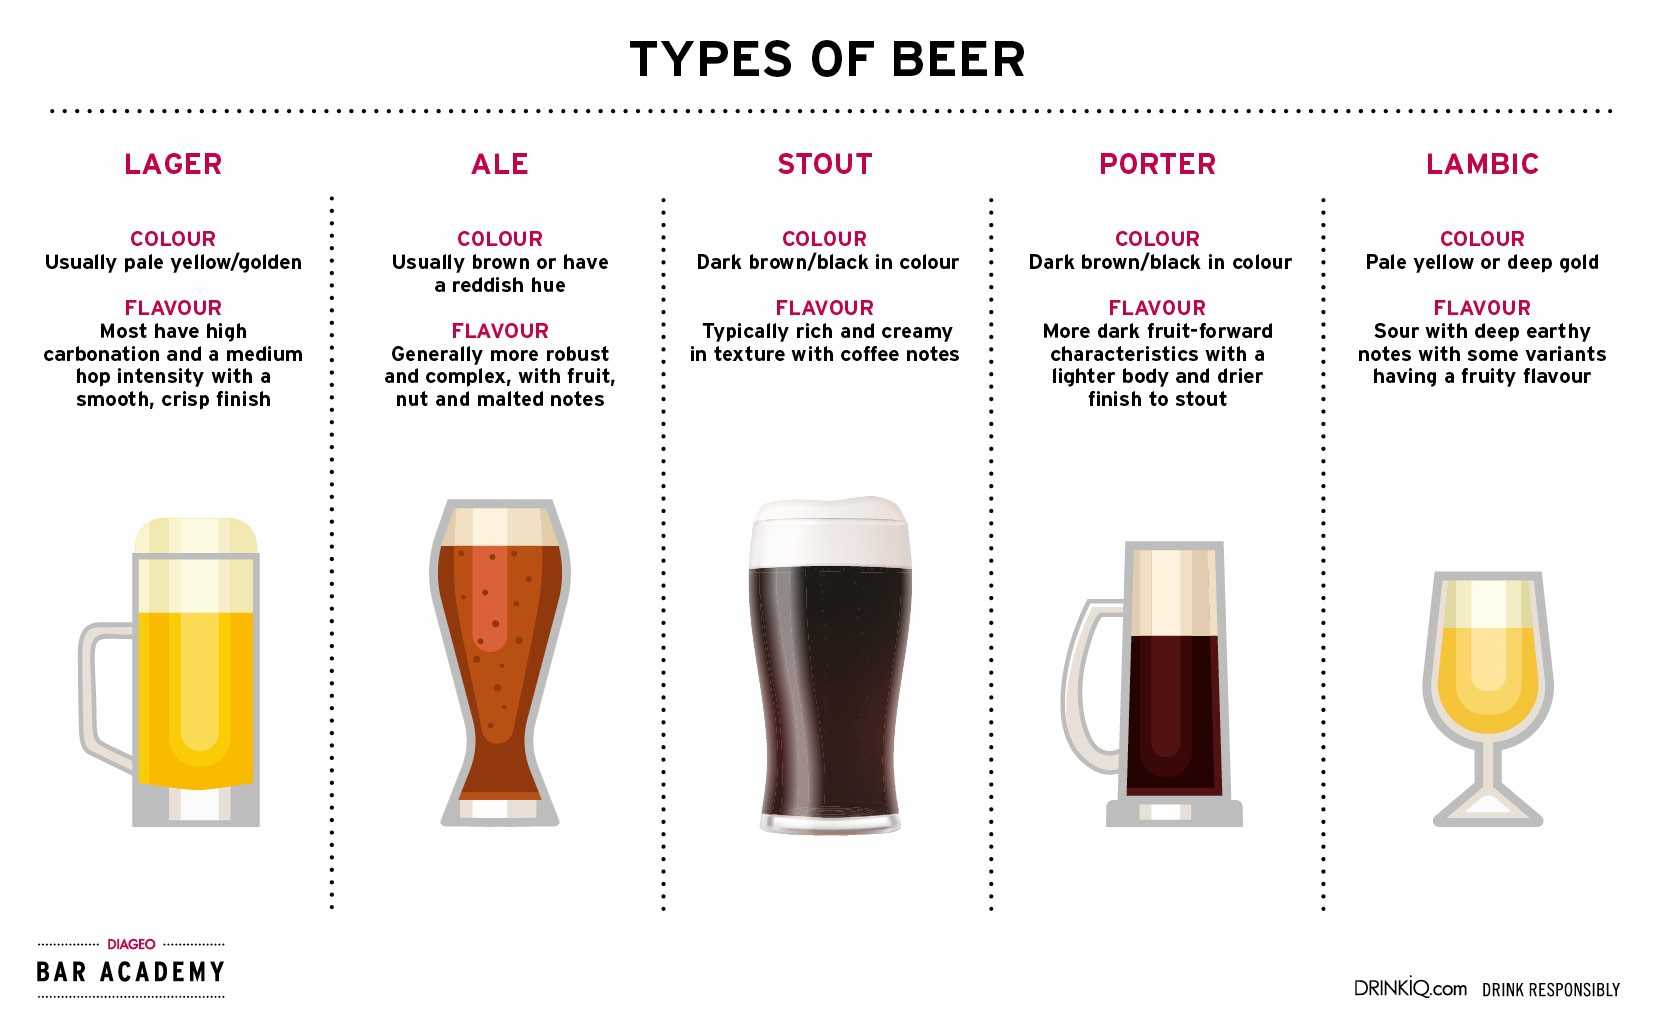 Пиво пилснер (pilsner) ‒ описание, история, виды, с чем сочетать